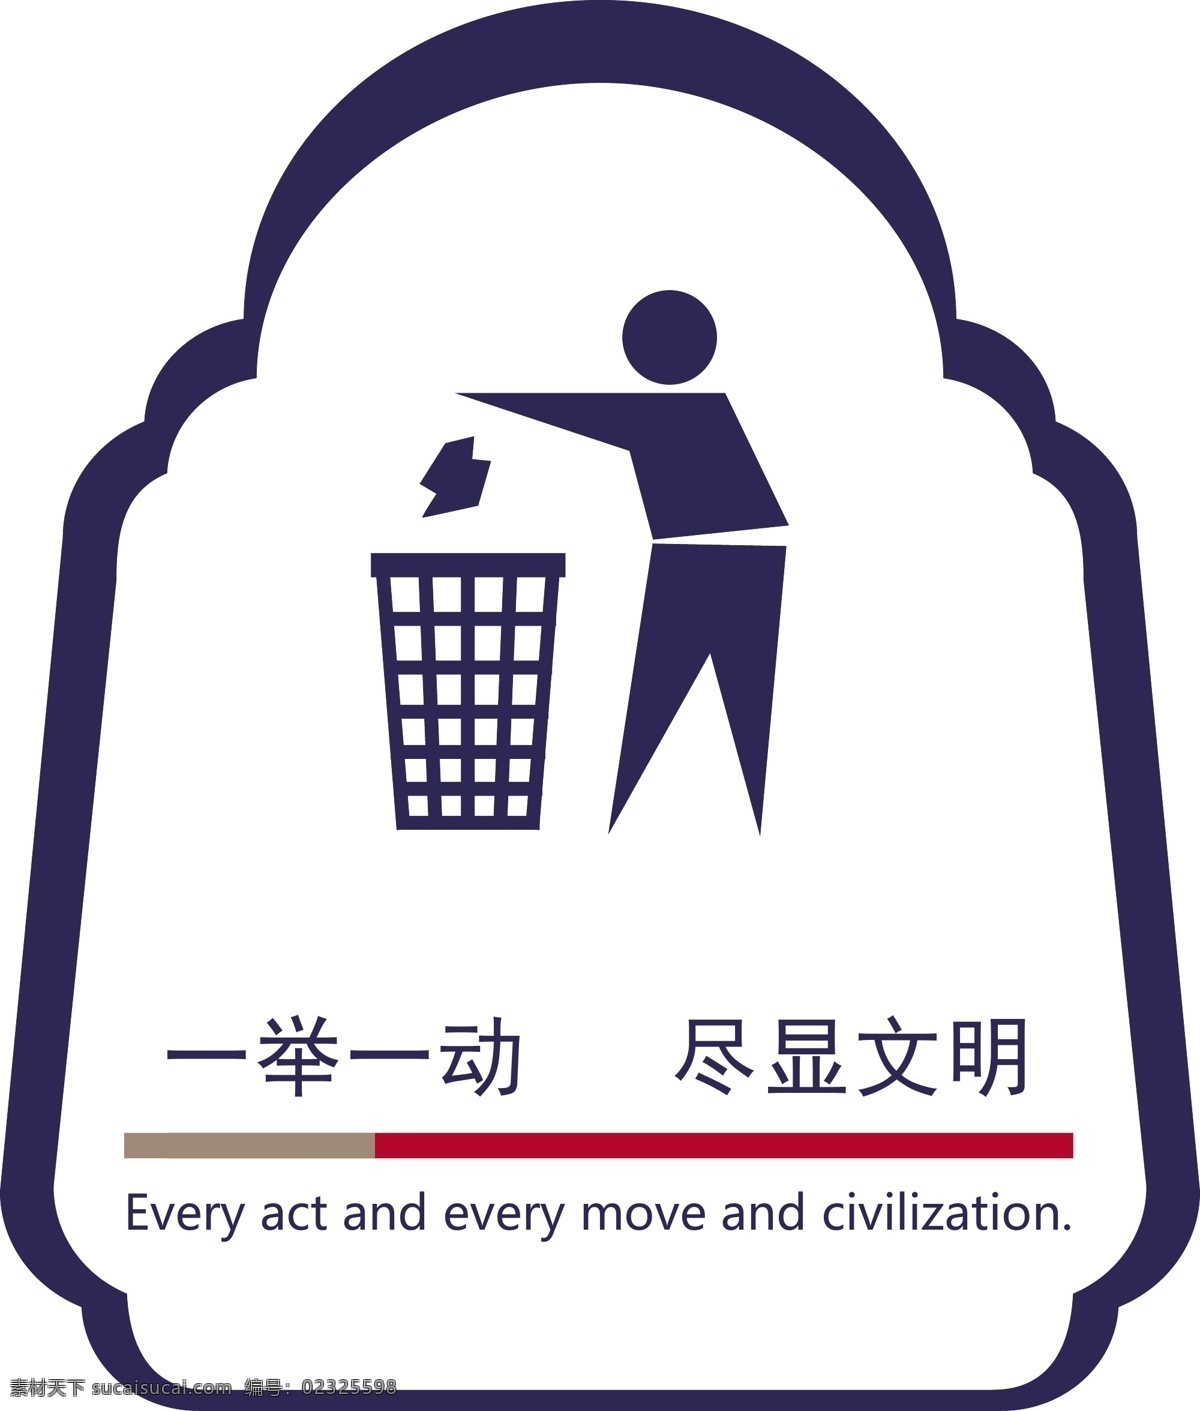 禁止乱扔垃圾 环保 宣传语 文明 边框